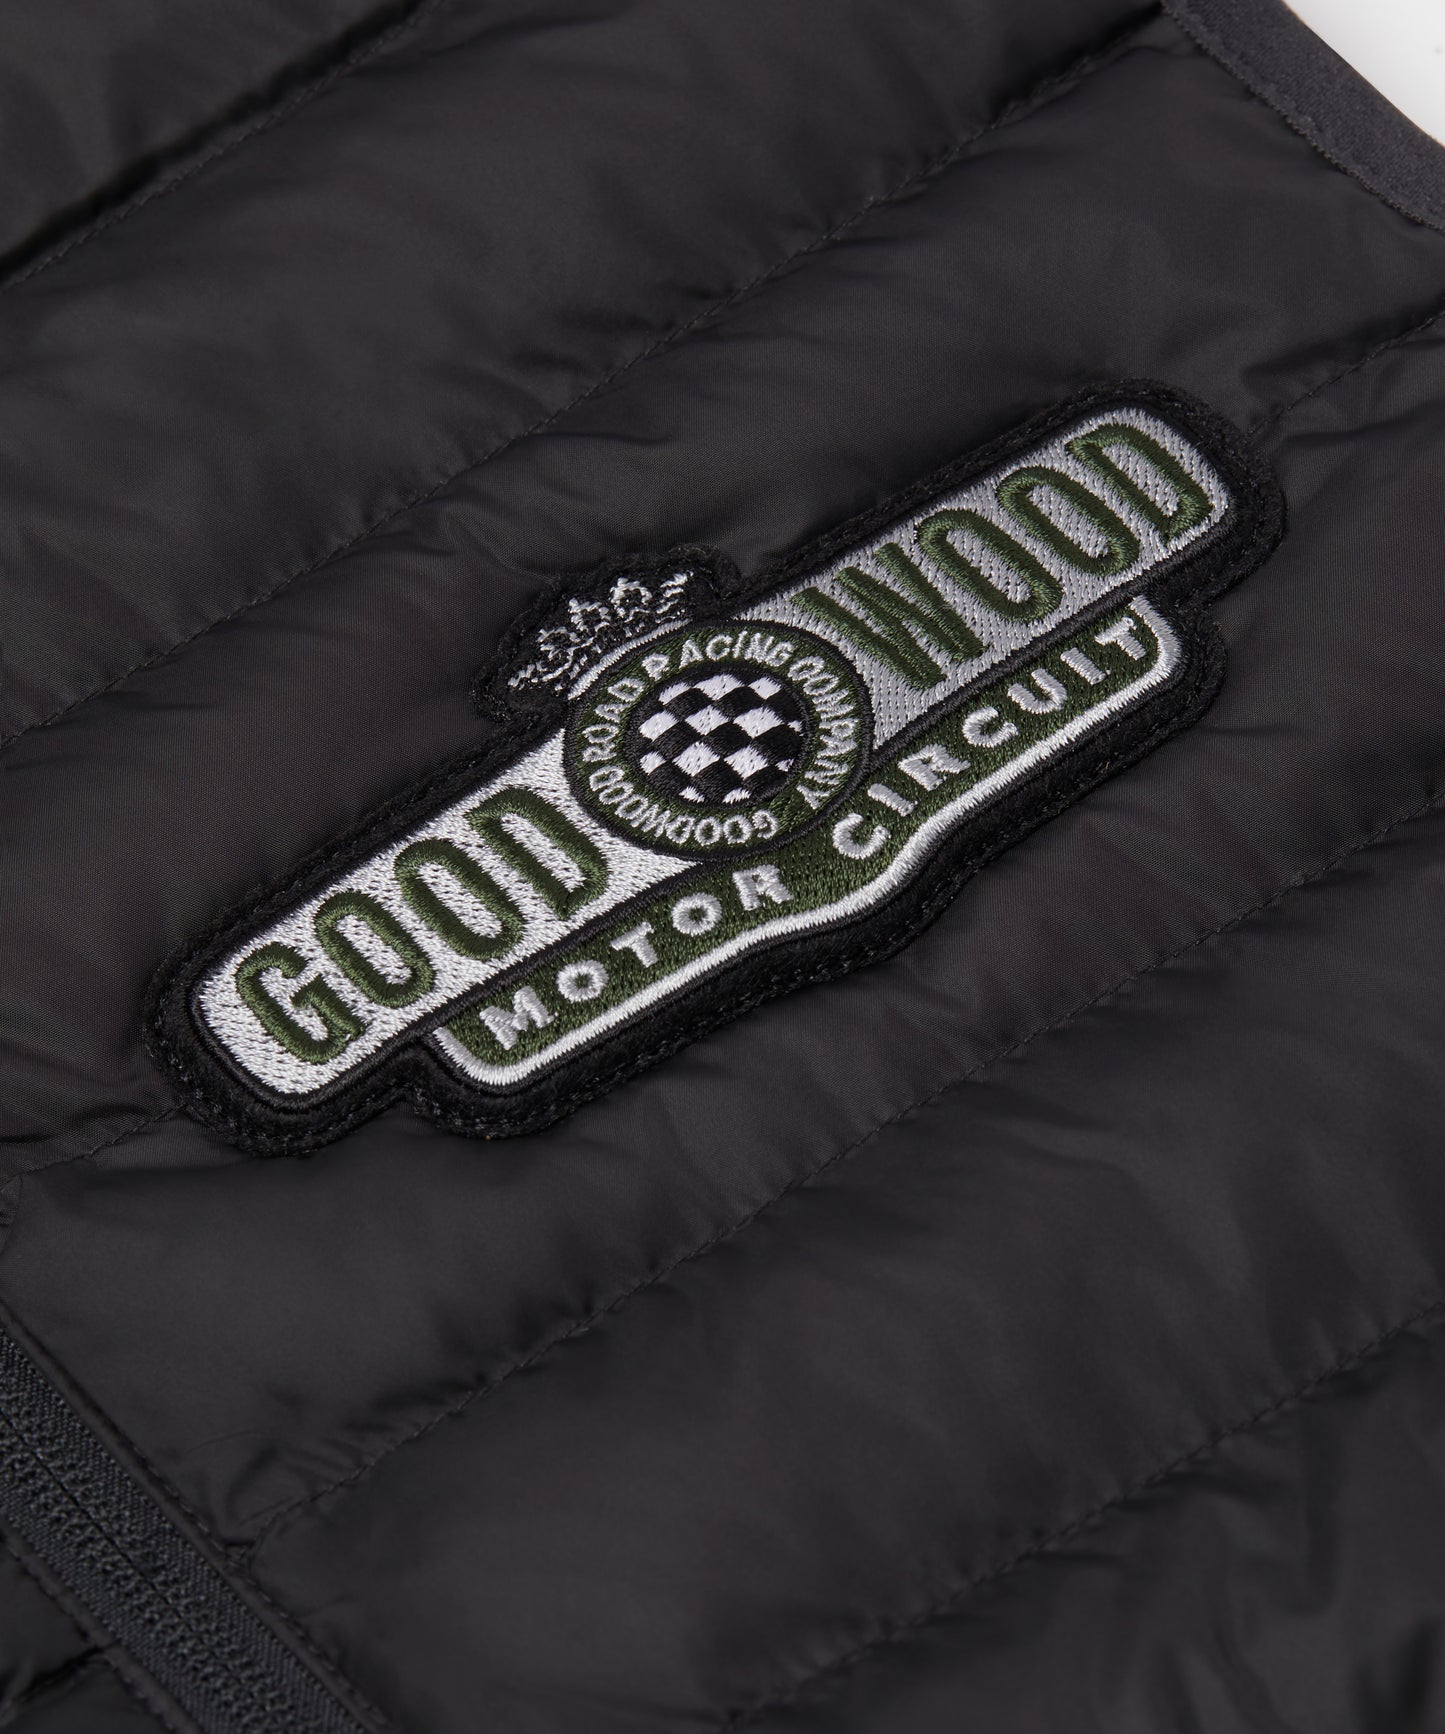 Goodwood Motor Circuit Gilet